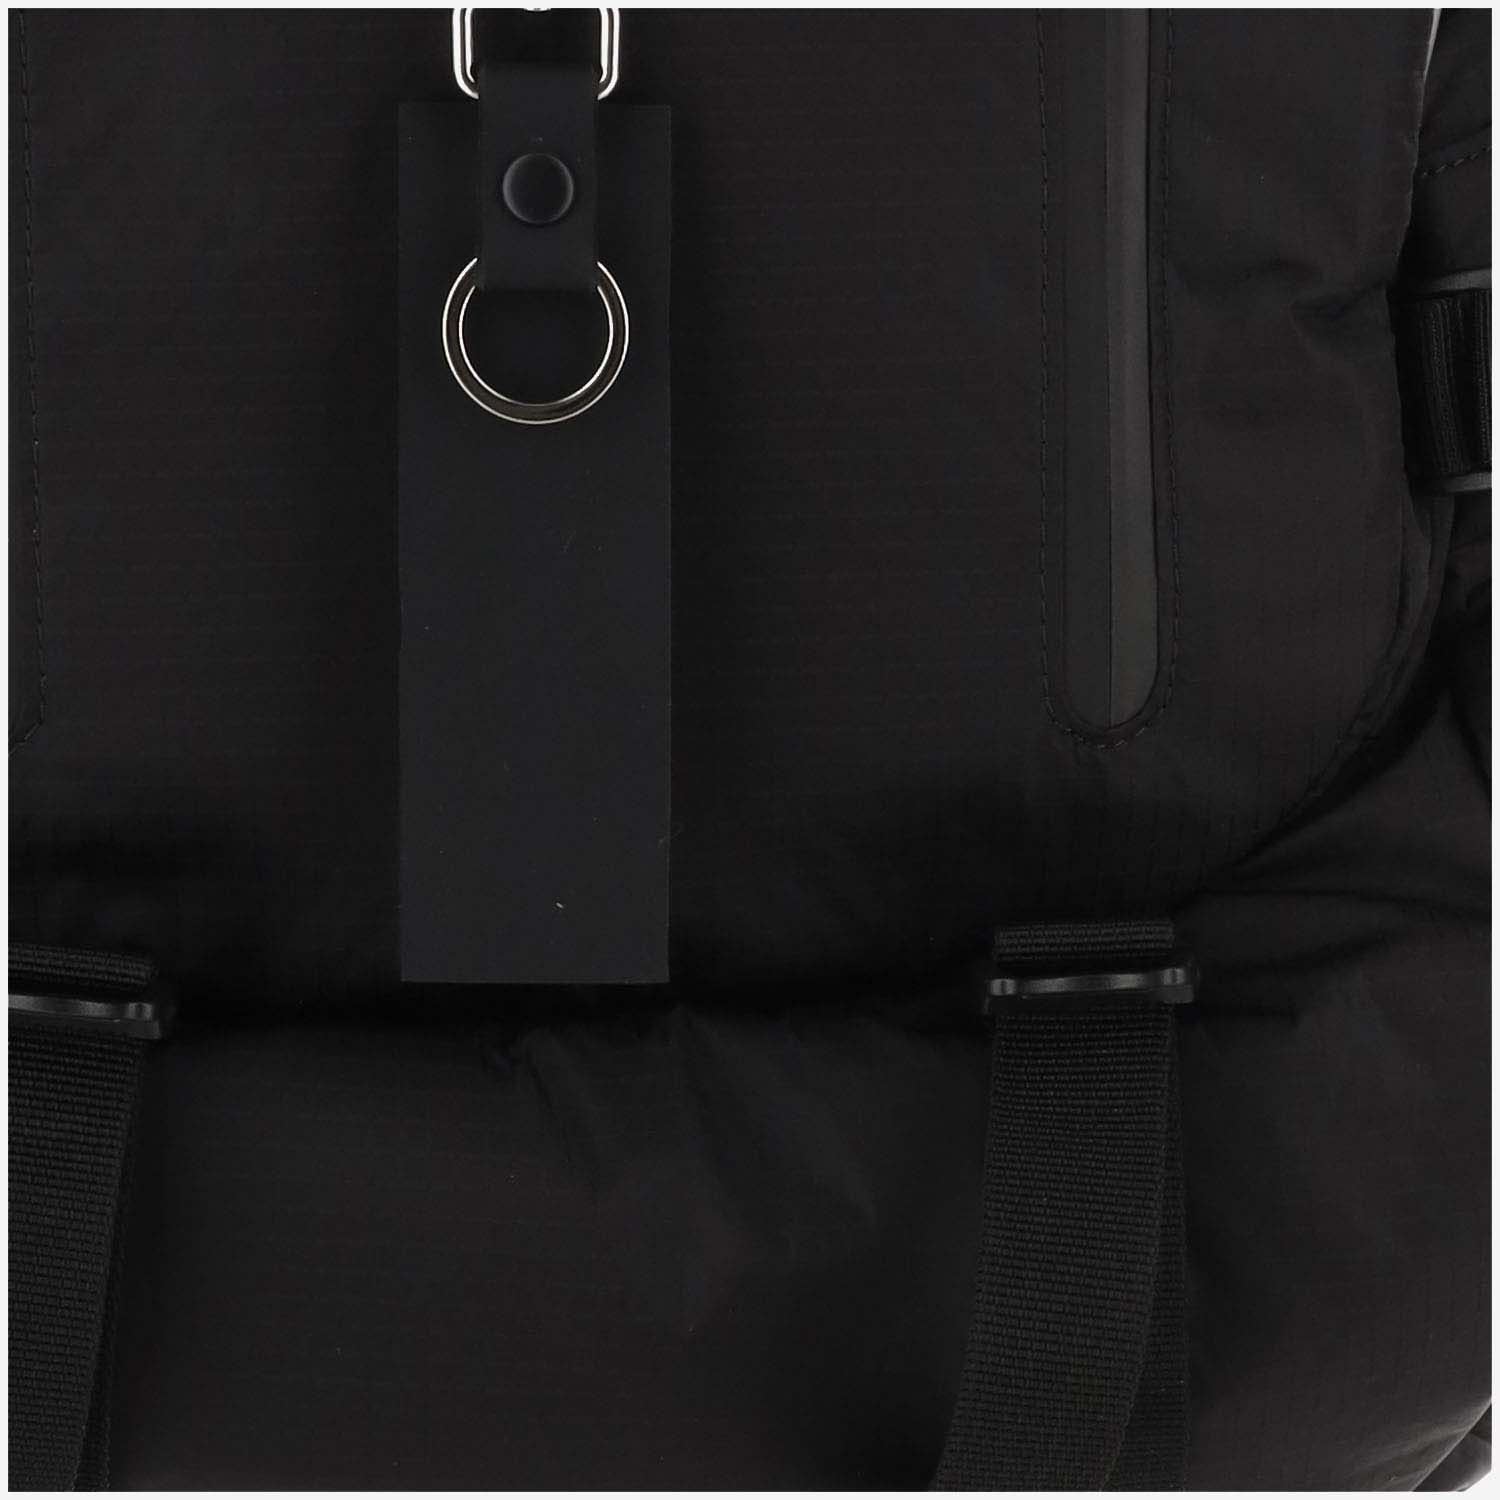 Shop Premiata Nylon Ventura Backpack In Black